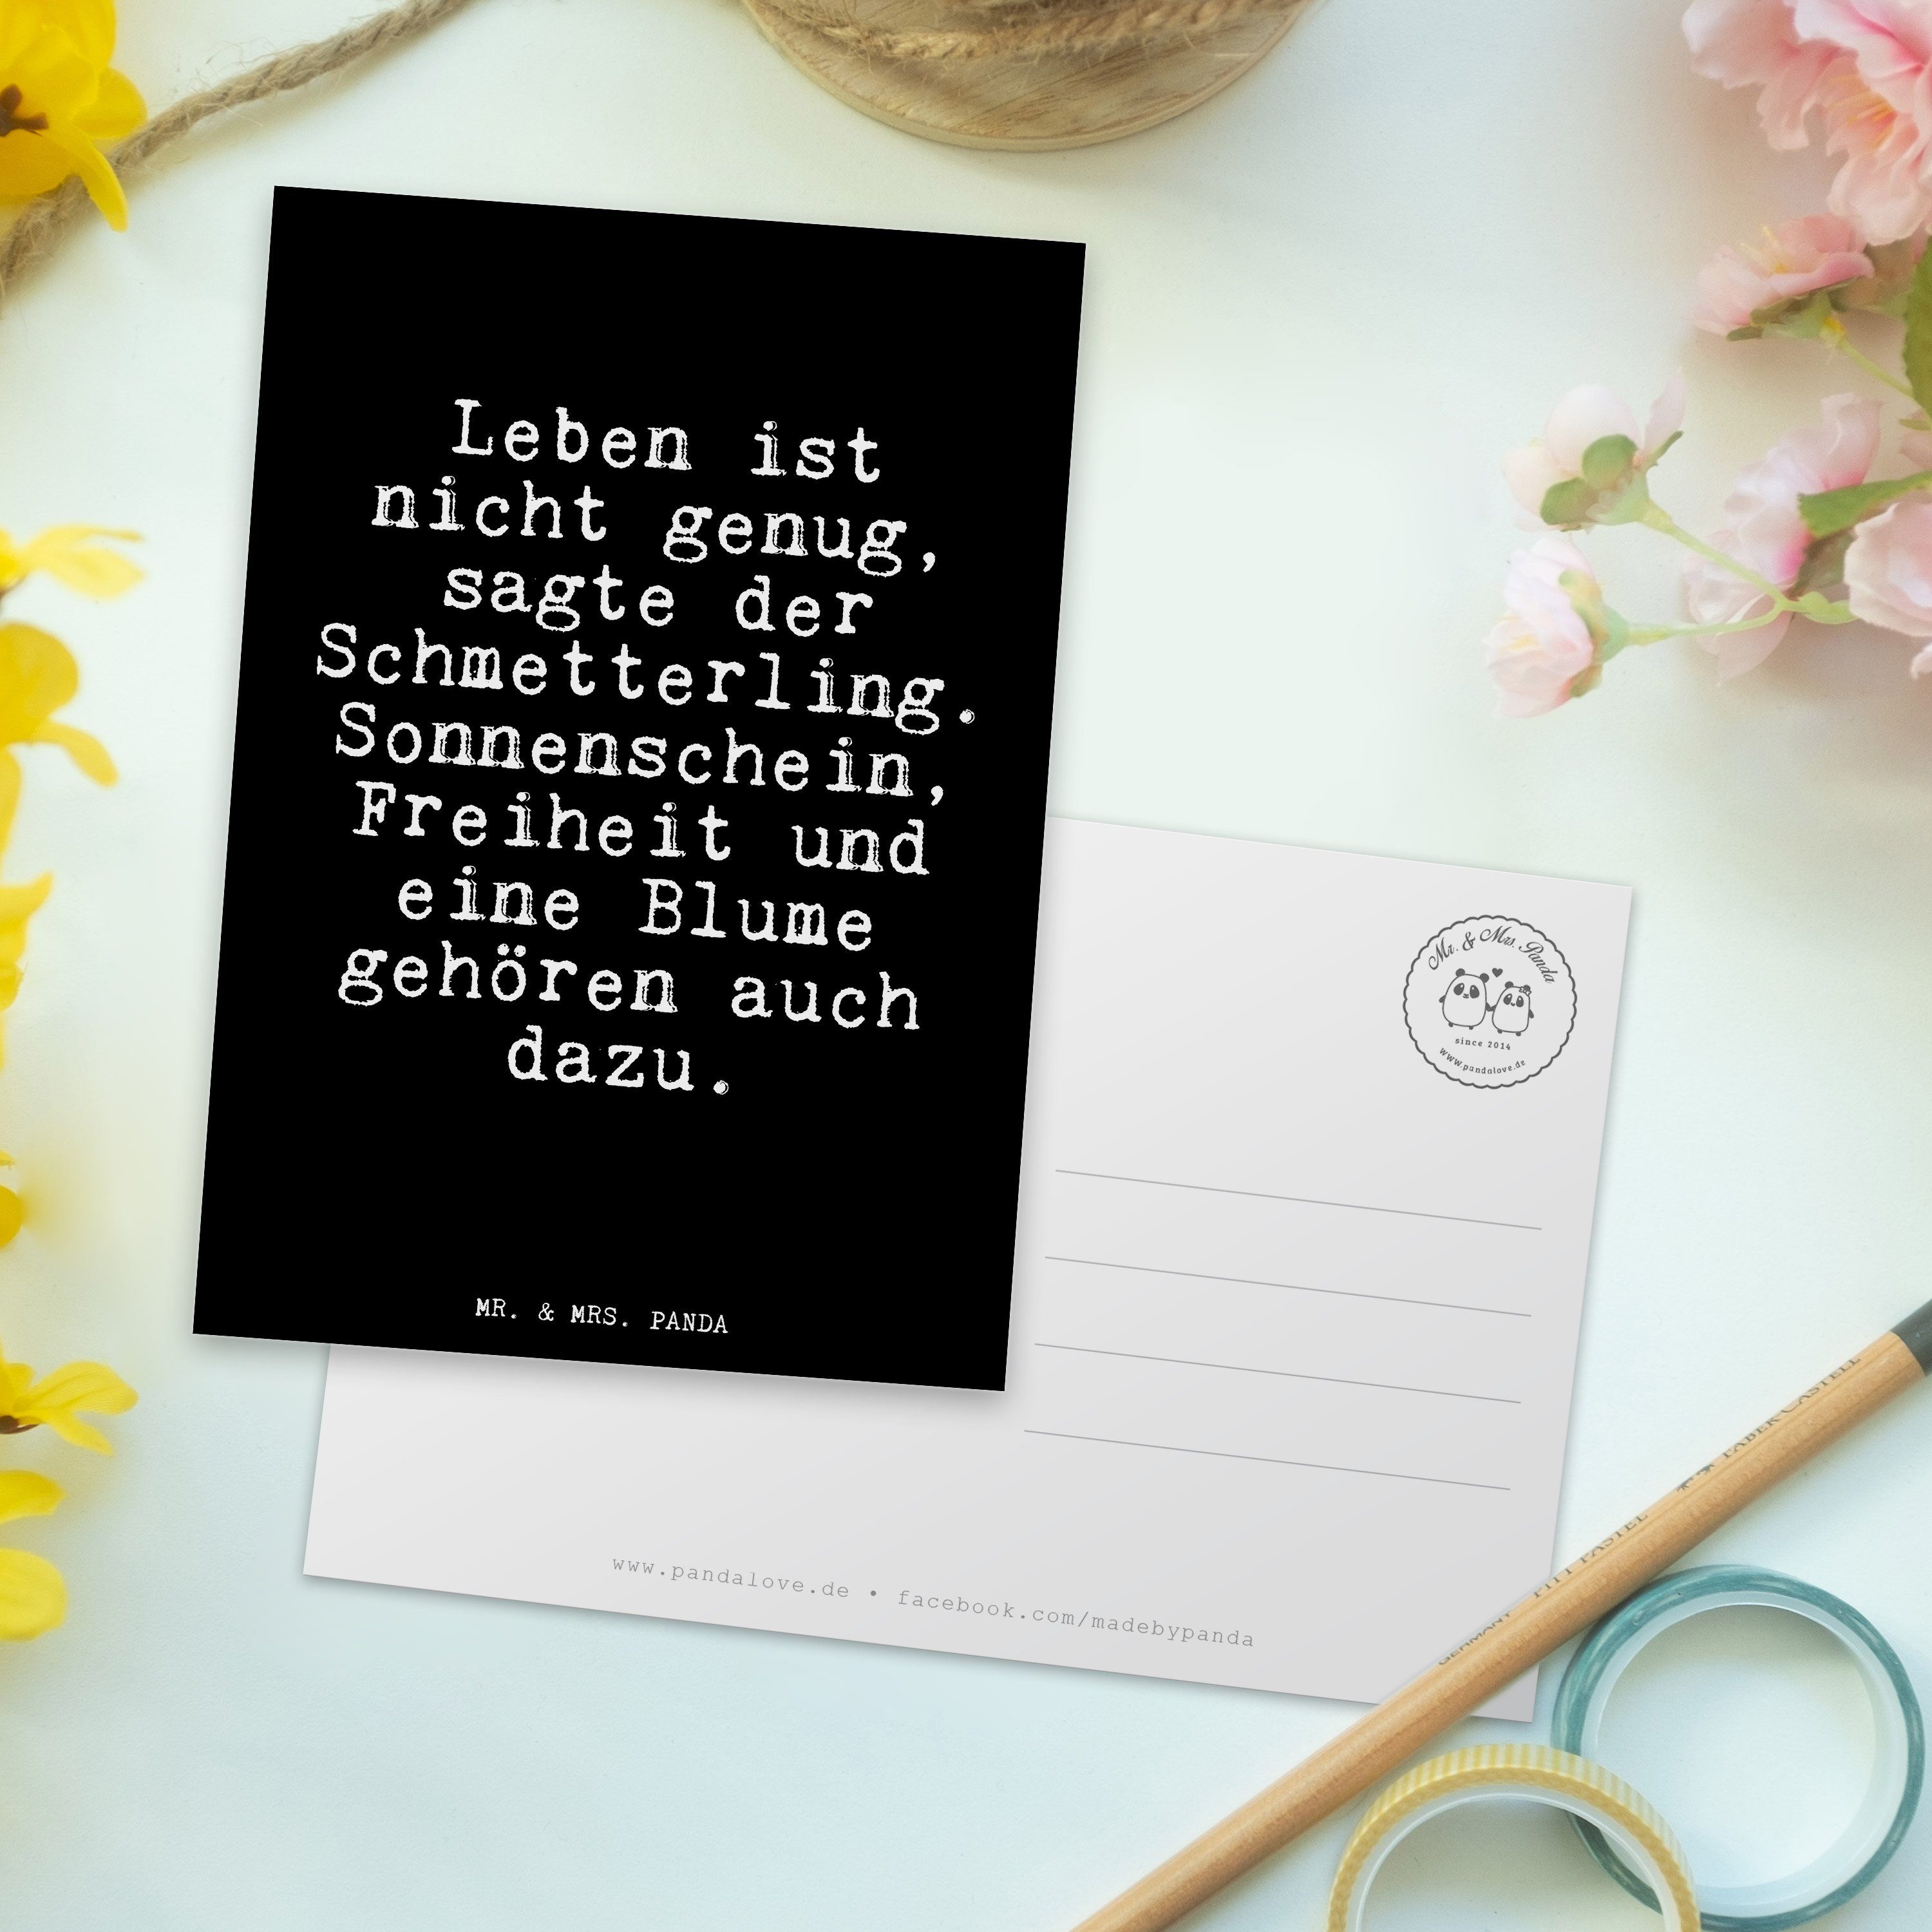 Mr. & Mrs. nicht Leben Postkarte Einlad - Geschenk, ist genug,... - Schmetterling, Panda Schwarz